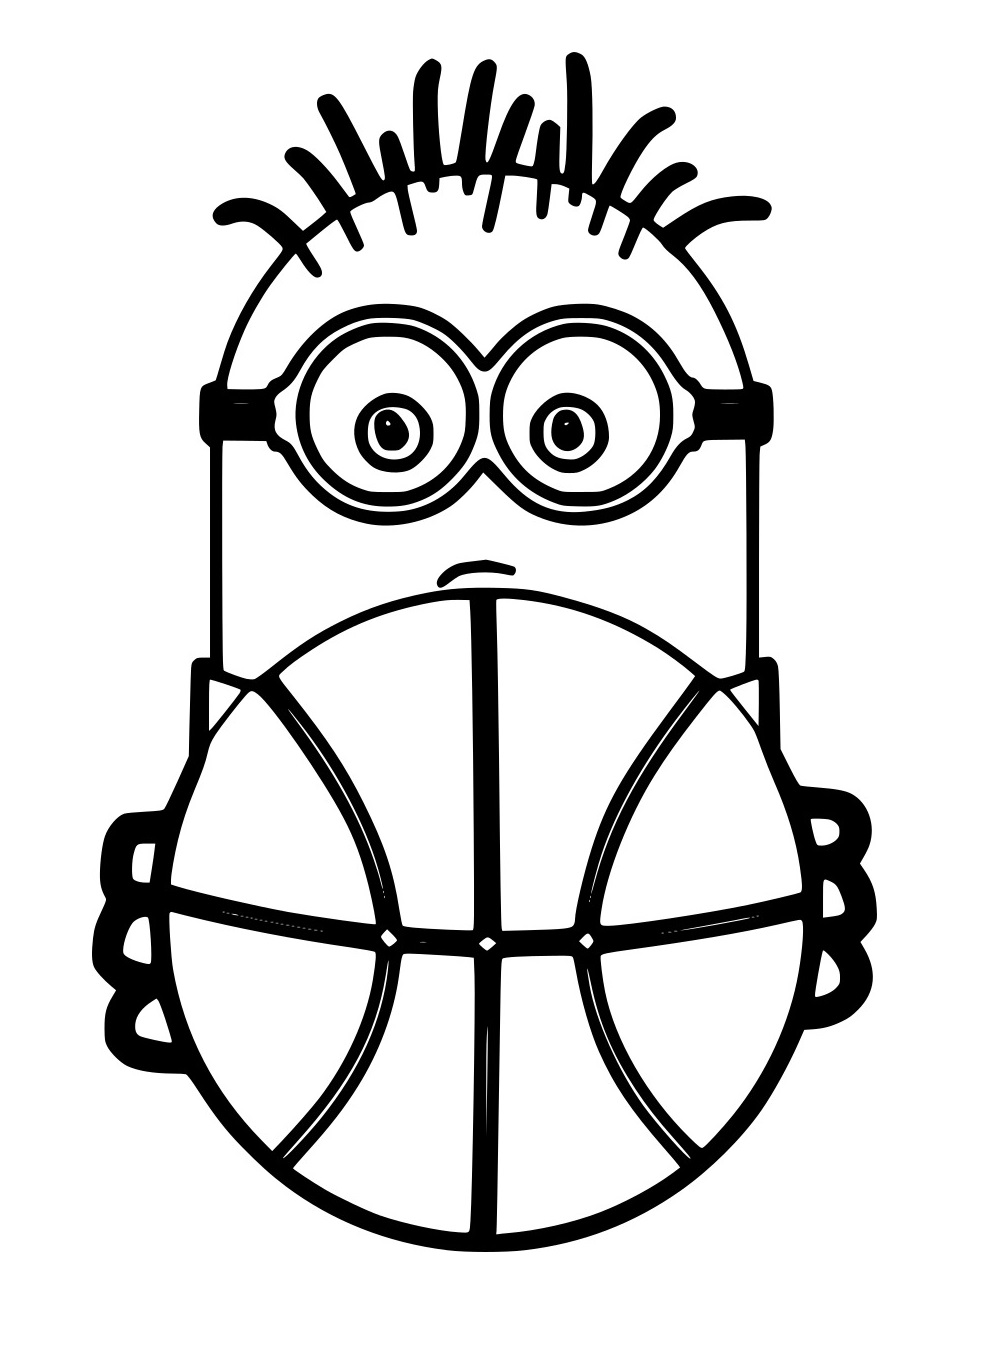 Minionshält einen Basketball